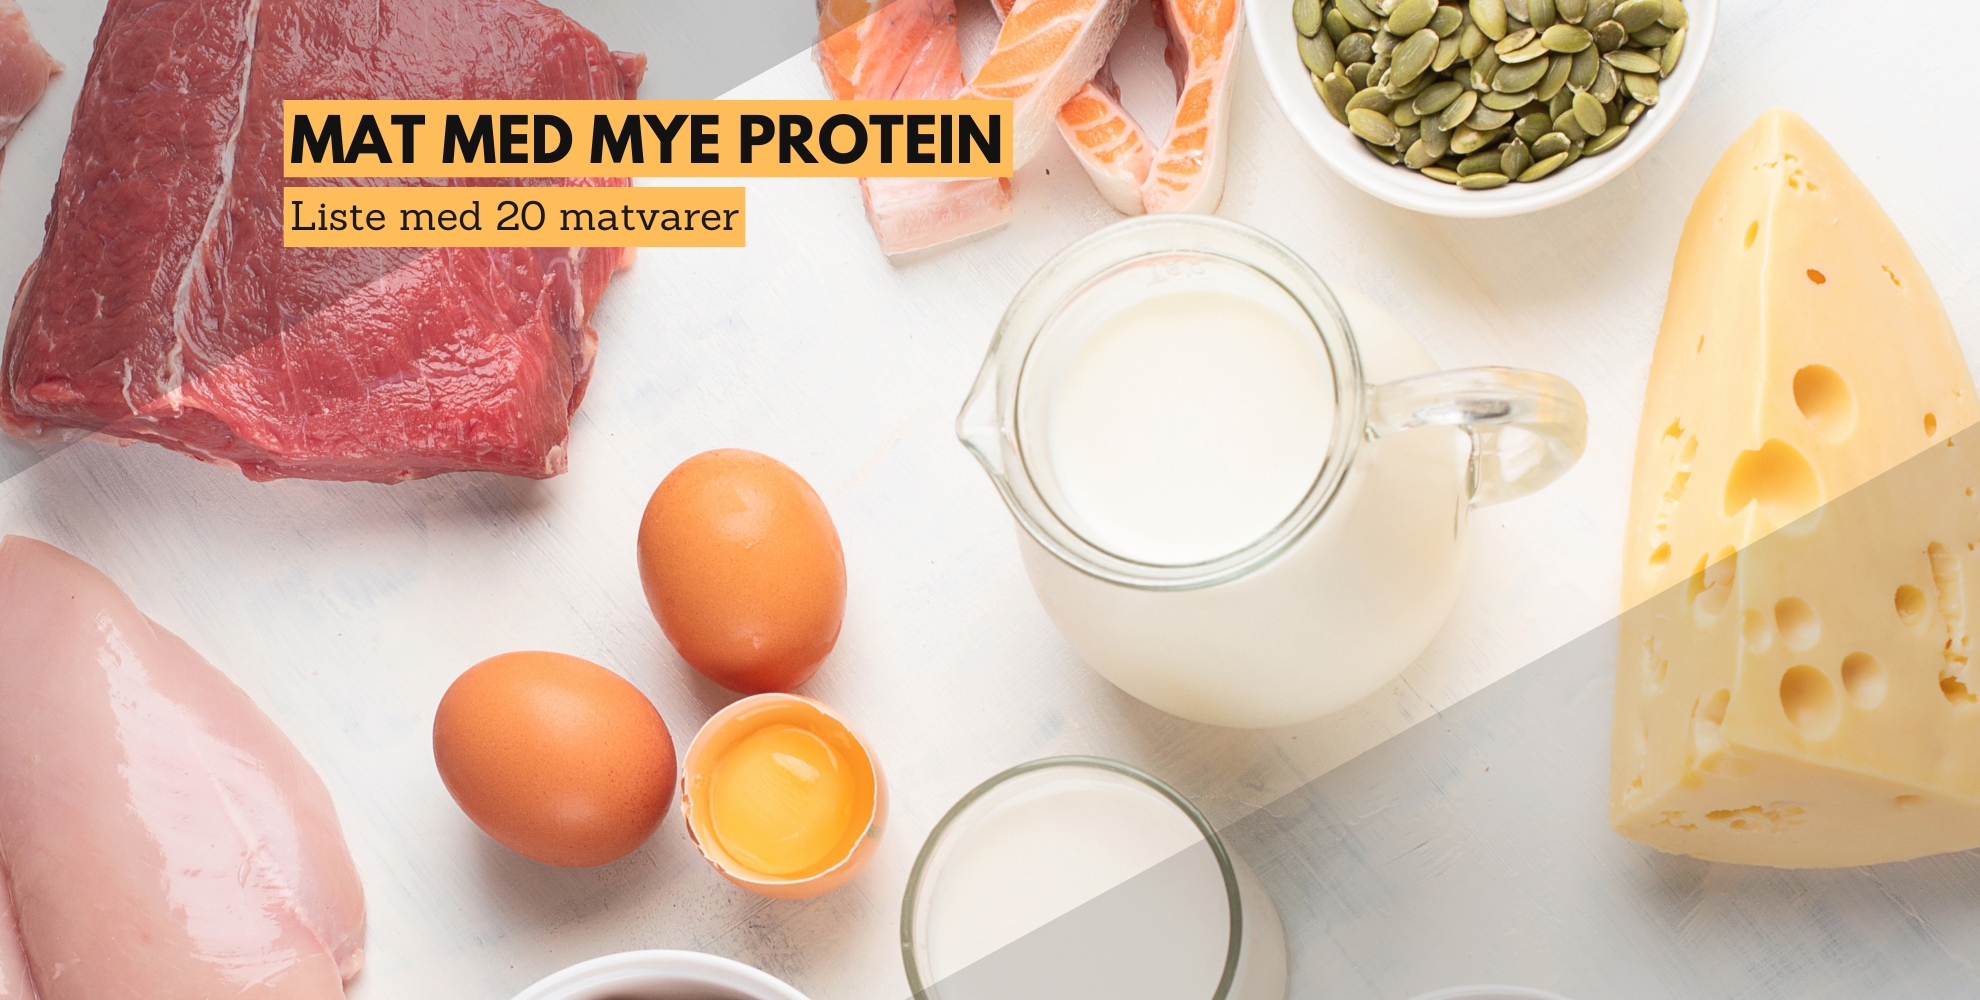 bilde av ulike matvarer med mye protein, med tekst på bilde som sier: mat med mye protein, liste med 20 matvarer